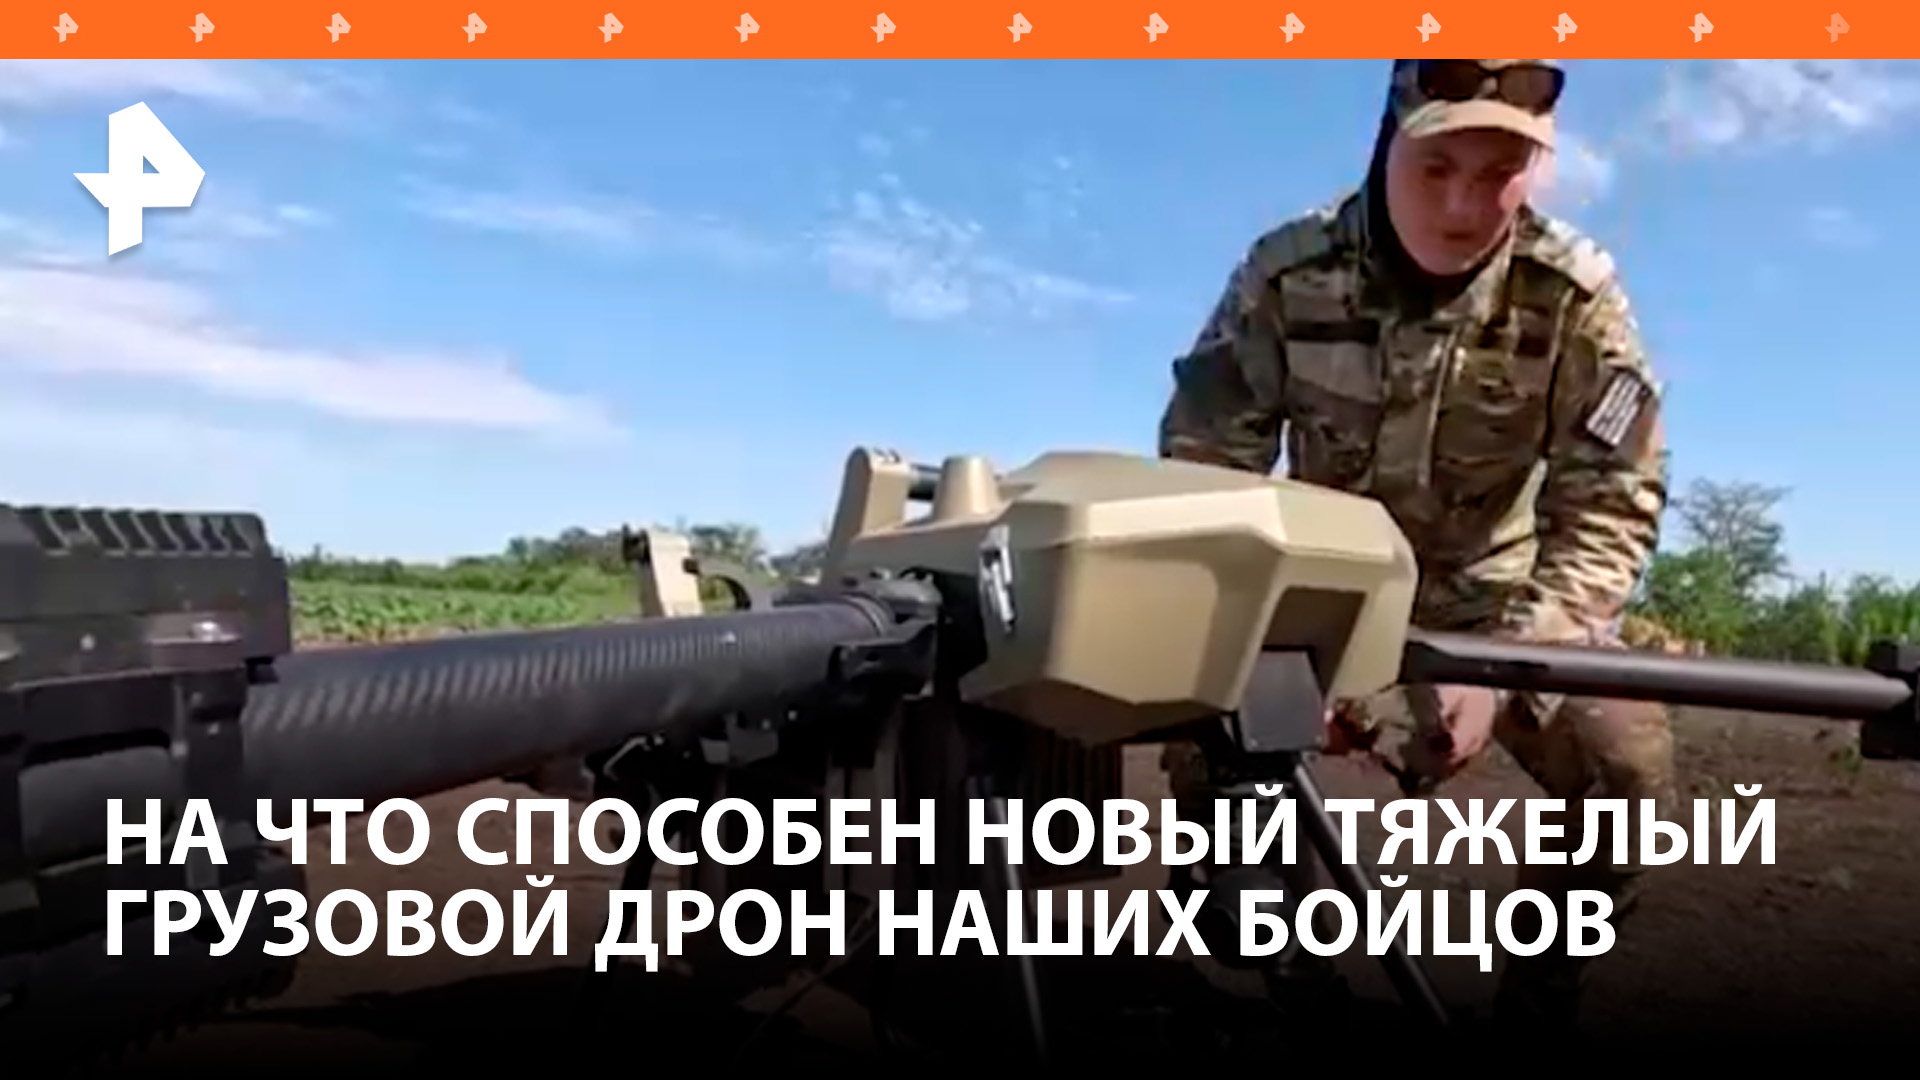 Забрасывает десант и эвакуирует раненых: на что способен новый дрон ВС РФ / РЕН Новости